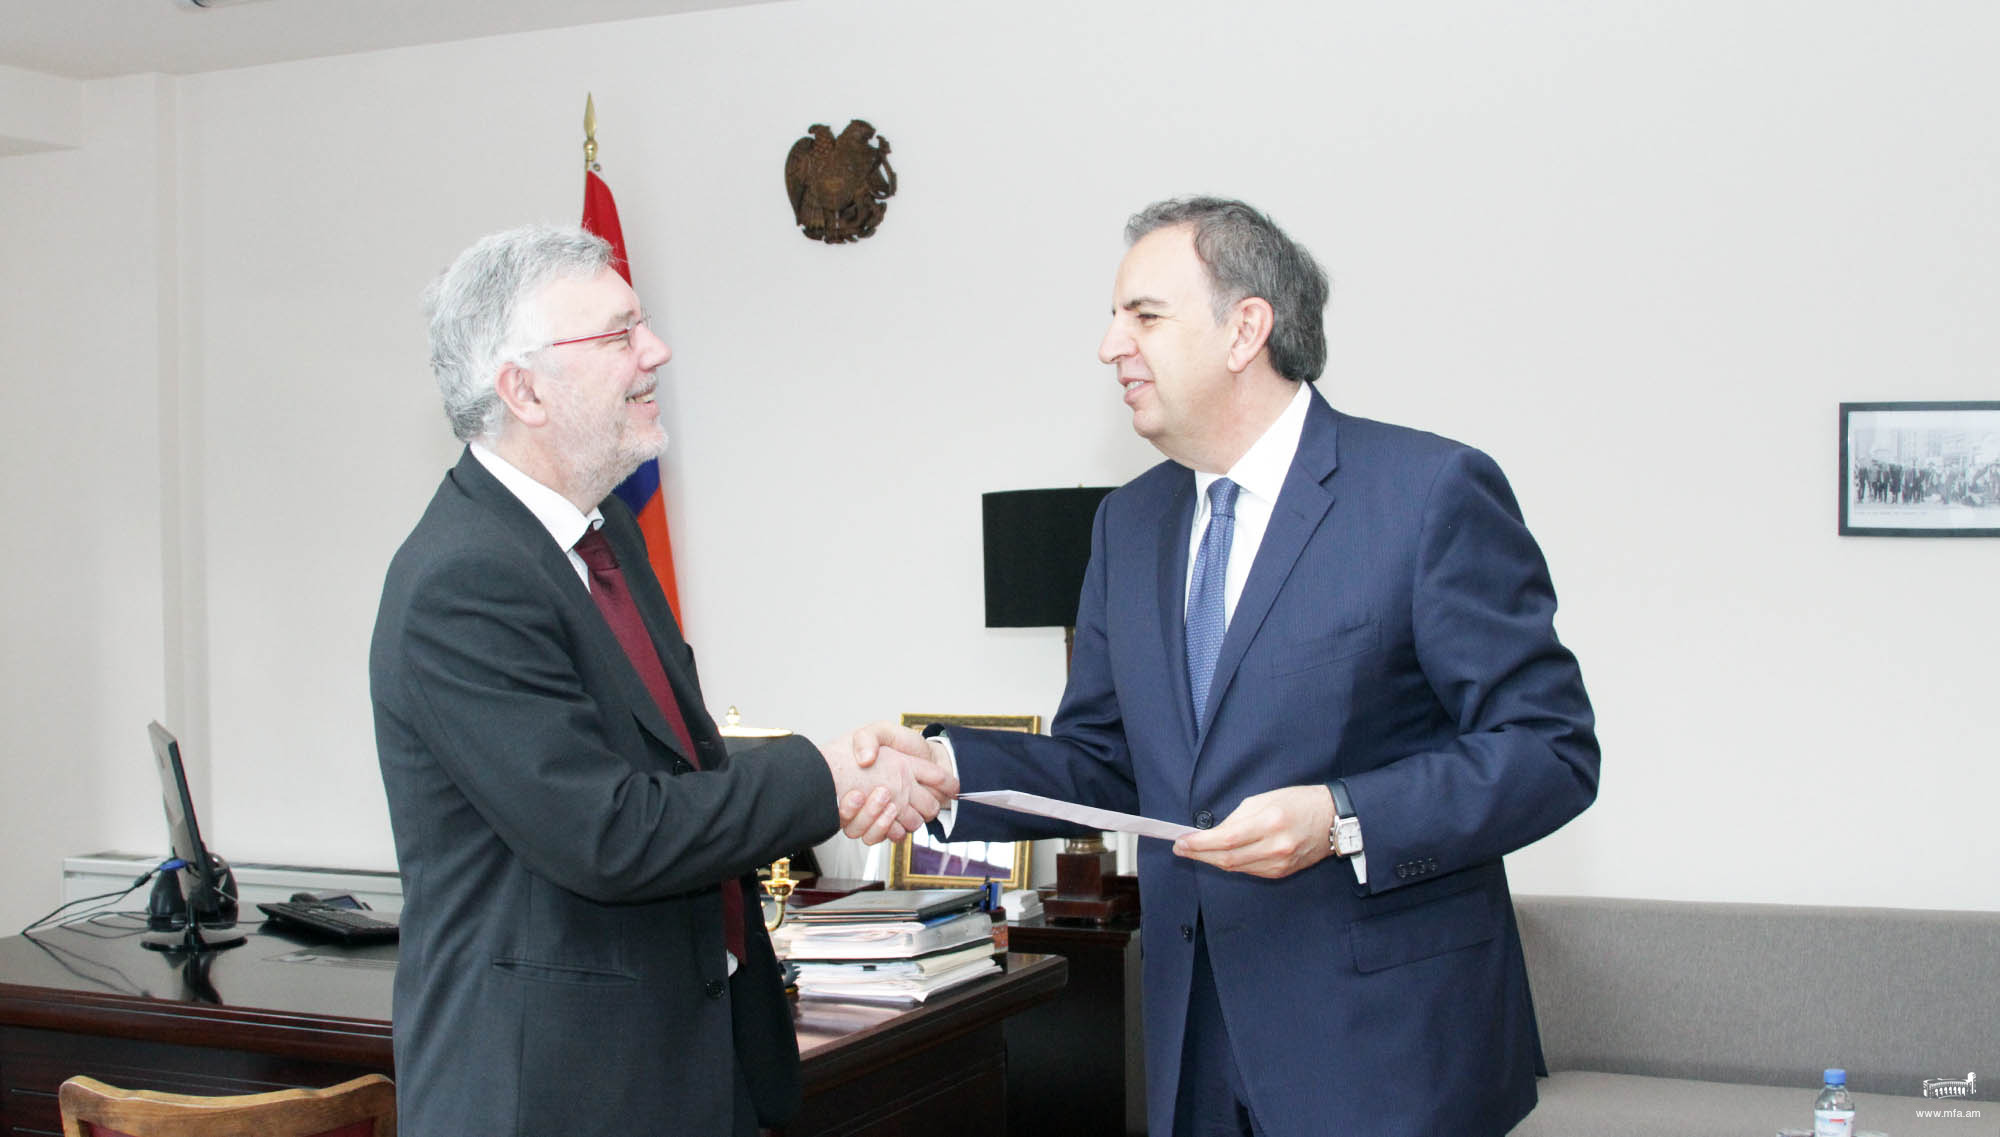 L’Ambassadeur du Royaume de Belgique a présenté les copies de ses lettres de créance au Vice-ministre arménien des Affaires étrangères